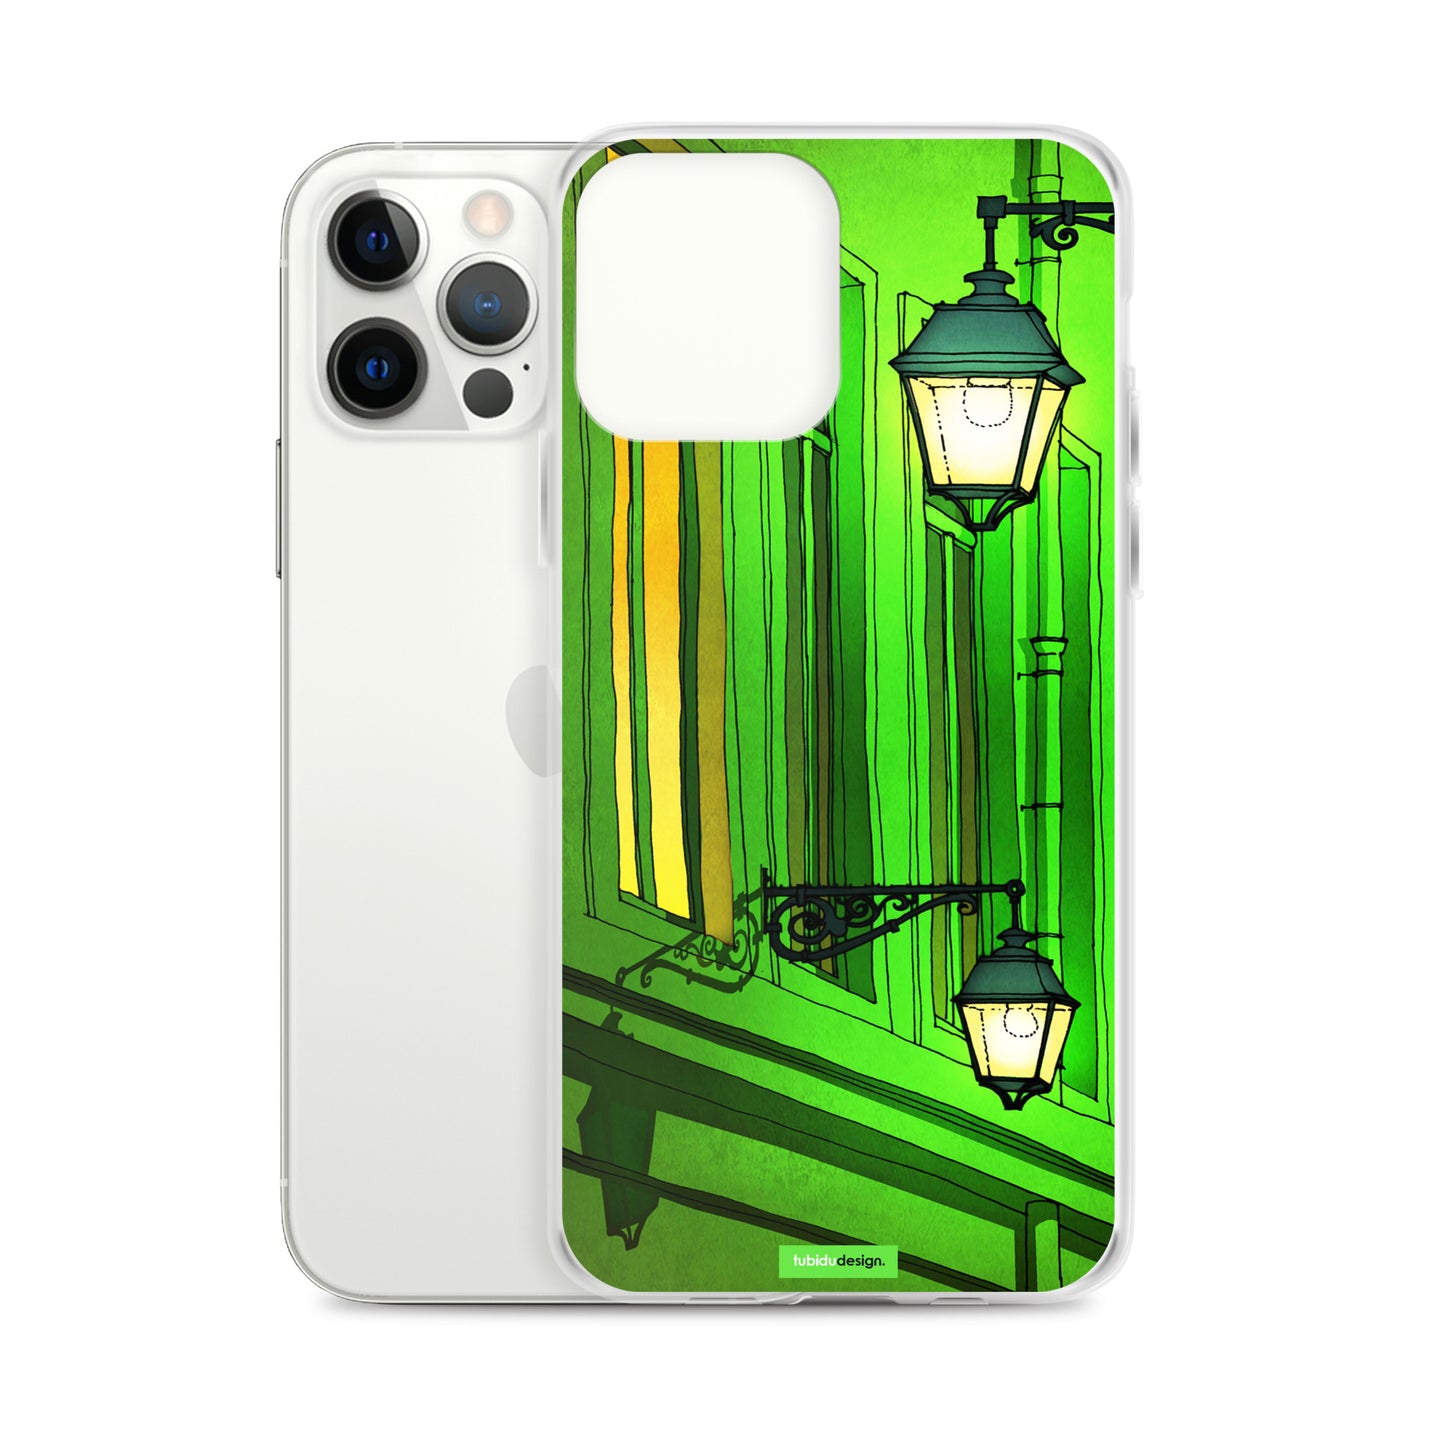 Quai St Michel (green) - Illustrated iPhone Case